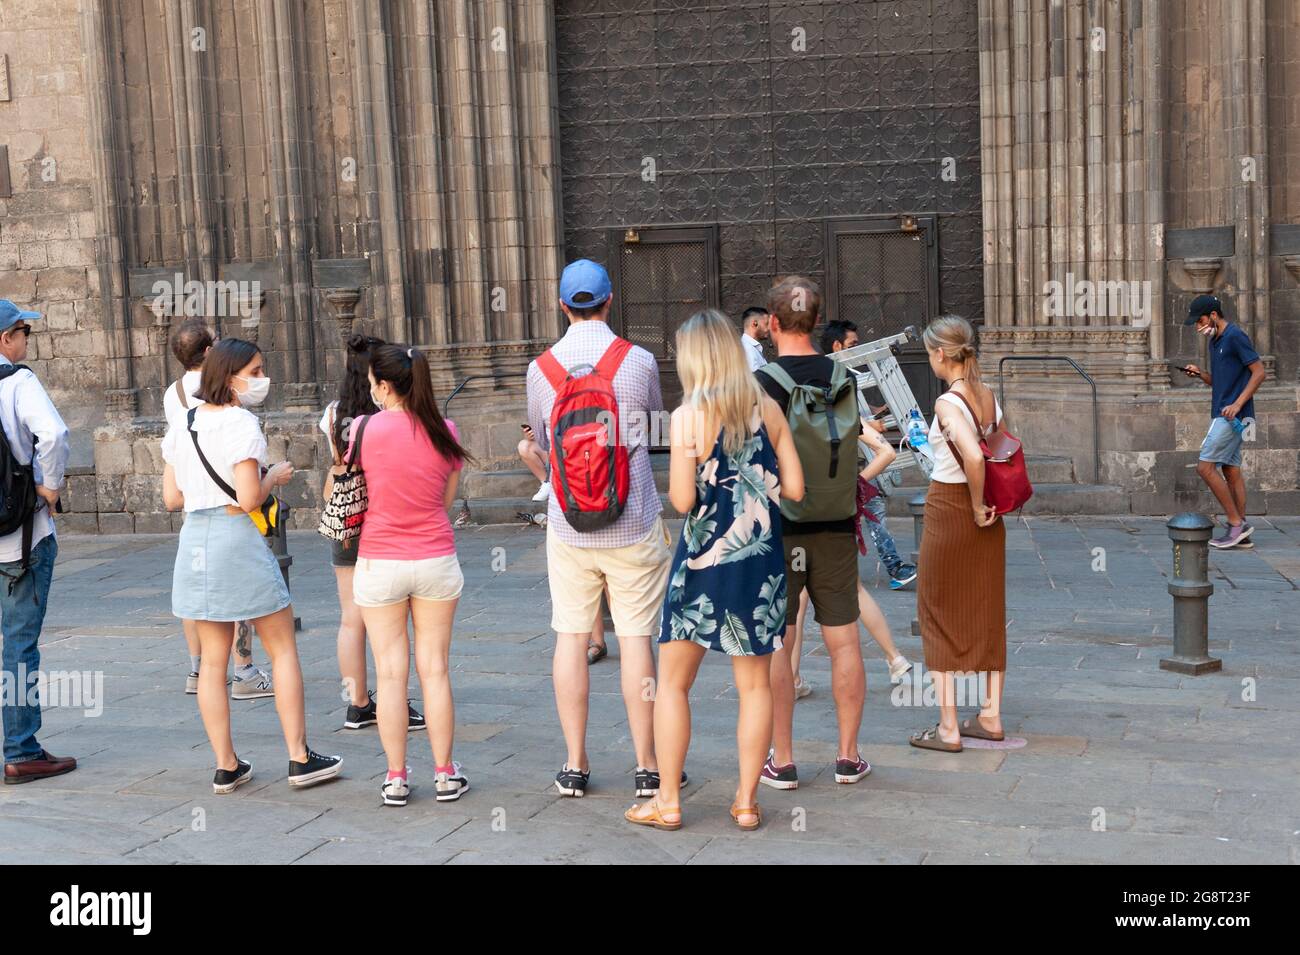 Barcelona, España; 19th de julio de 2021: Grupo de turistas que realizan una gira cultural en el centro de Barcelona, en pleno aumento de la incidencia de casos por COVID- Foto de stock